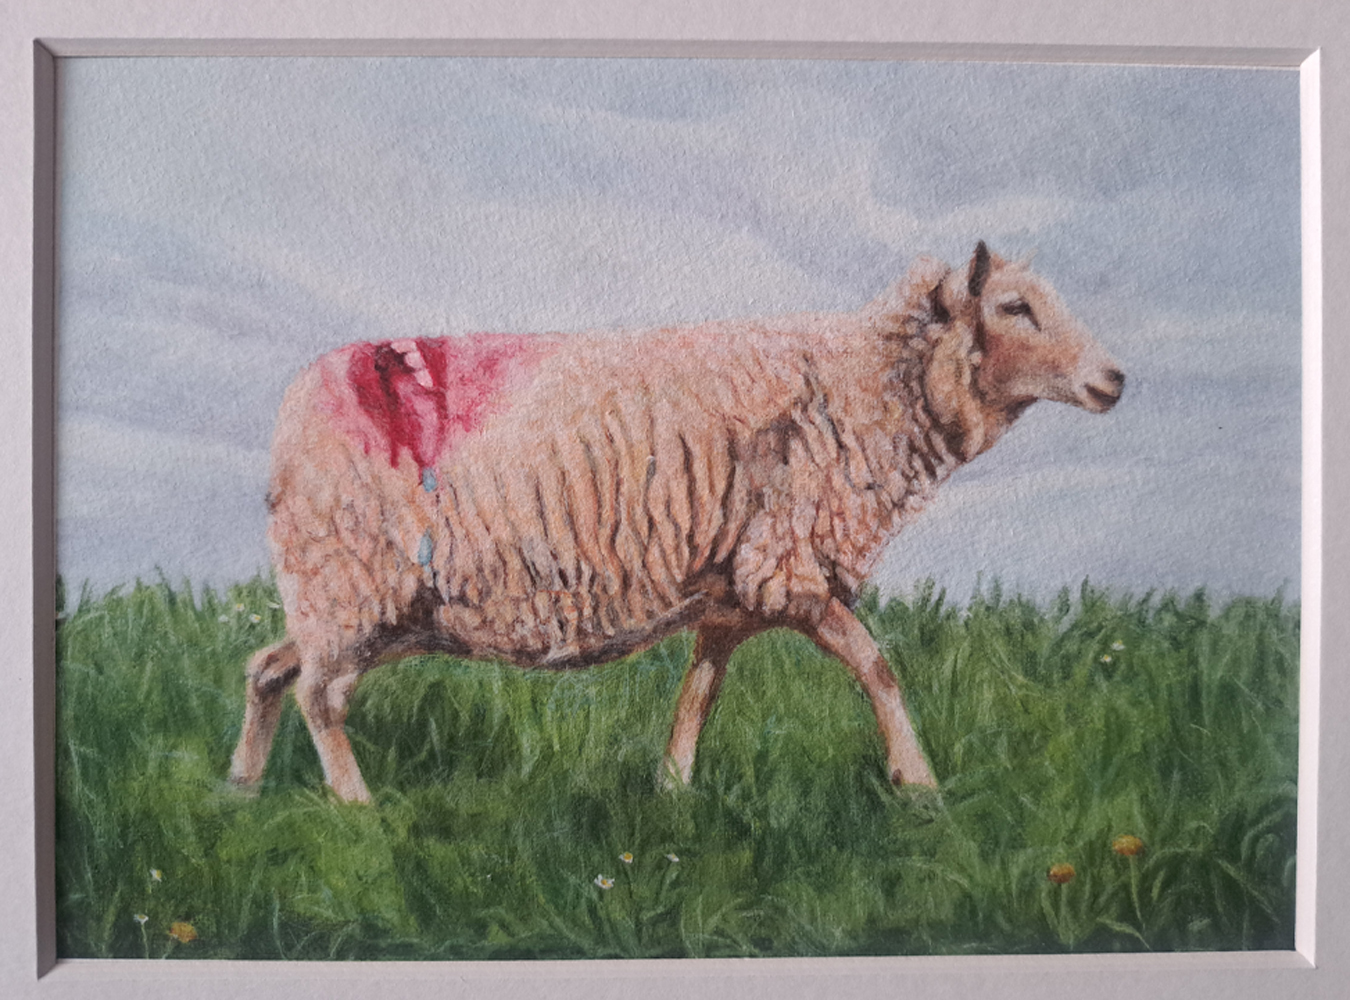 Humoristisch en realistisch uitgewerkt schaap van Celine Wessels. Dit werkt, wat oook is onder te verdelen als magisch realisme of magisch realistisch telt een schaap voor met graffitie, als persiflage op de gekleure konten die schapen hebben na te zijn gedekt.